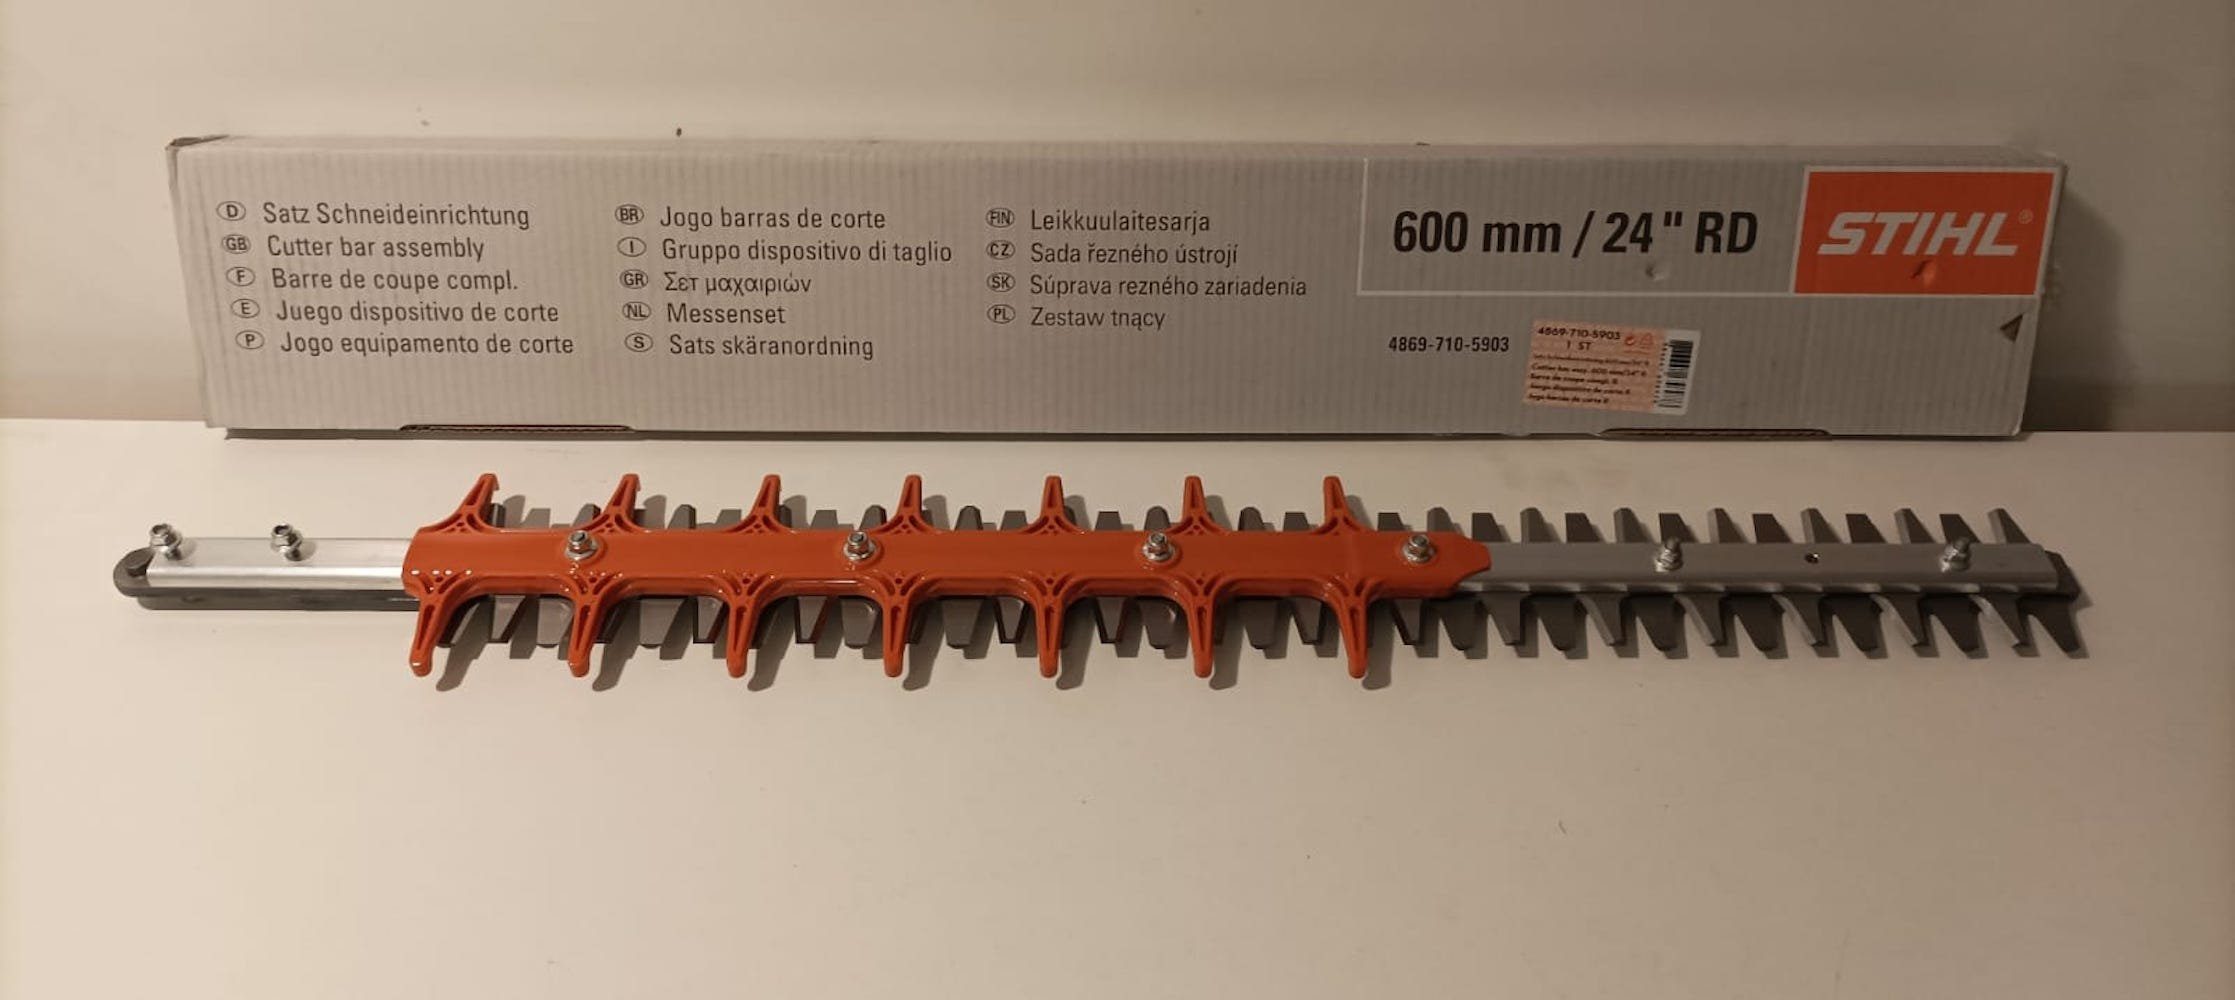 STIHL Kombi-Heckenschere Original Messersatz HSA 94 R 600mm 48697105903, (1  Satz Messer)